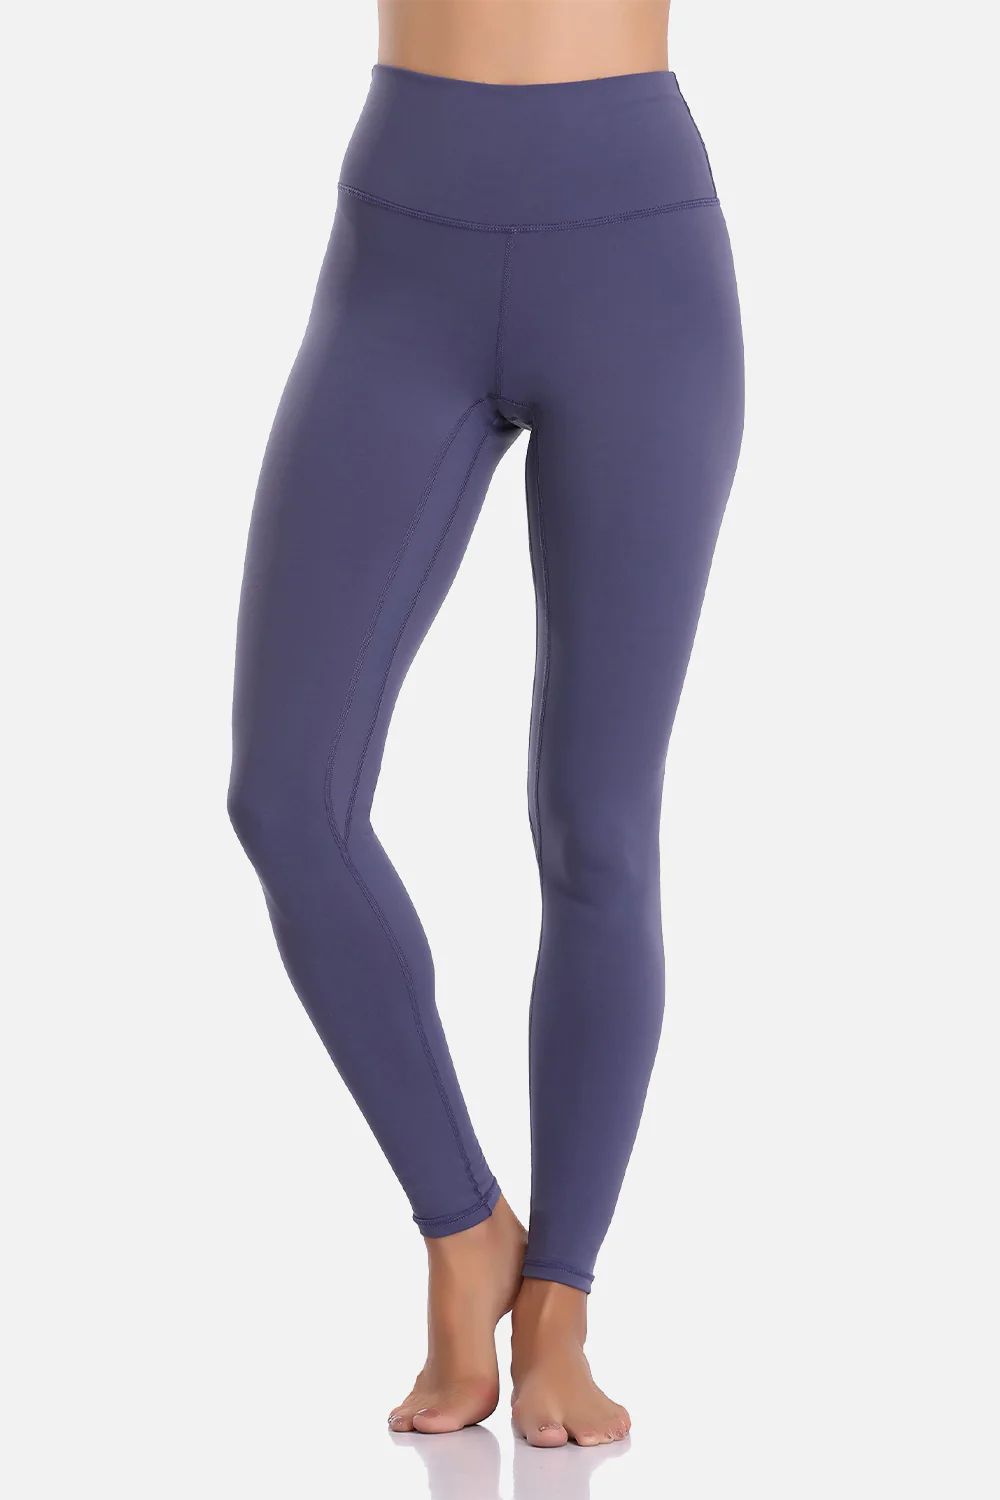 Colorfulkoala Women's Buttery Soft High Waisted Yoga Pants Full-Length Leggings | Colorfulkoala